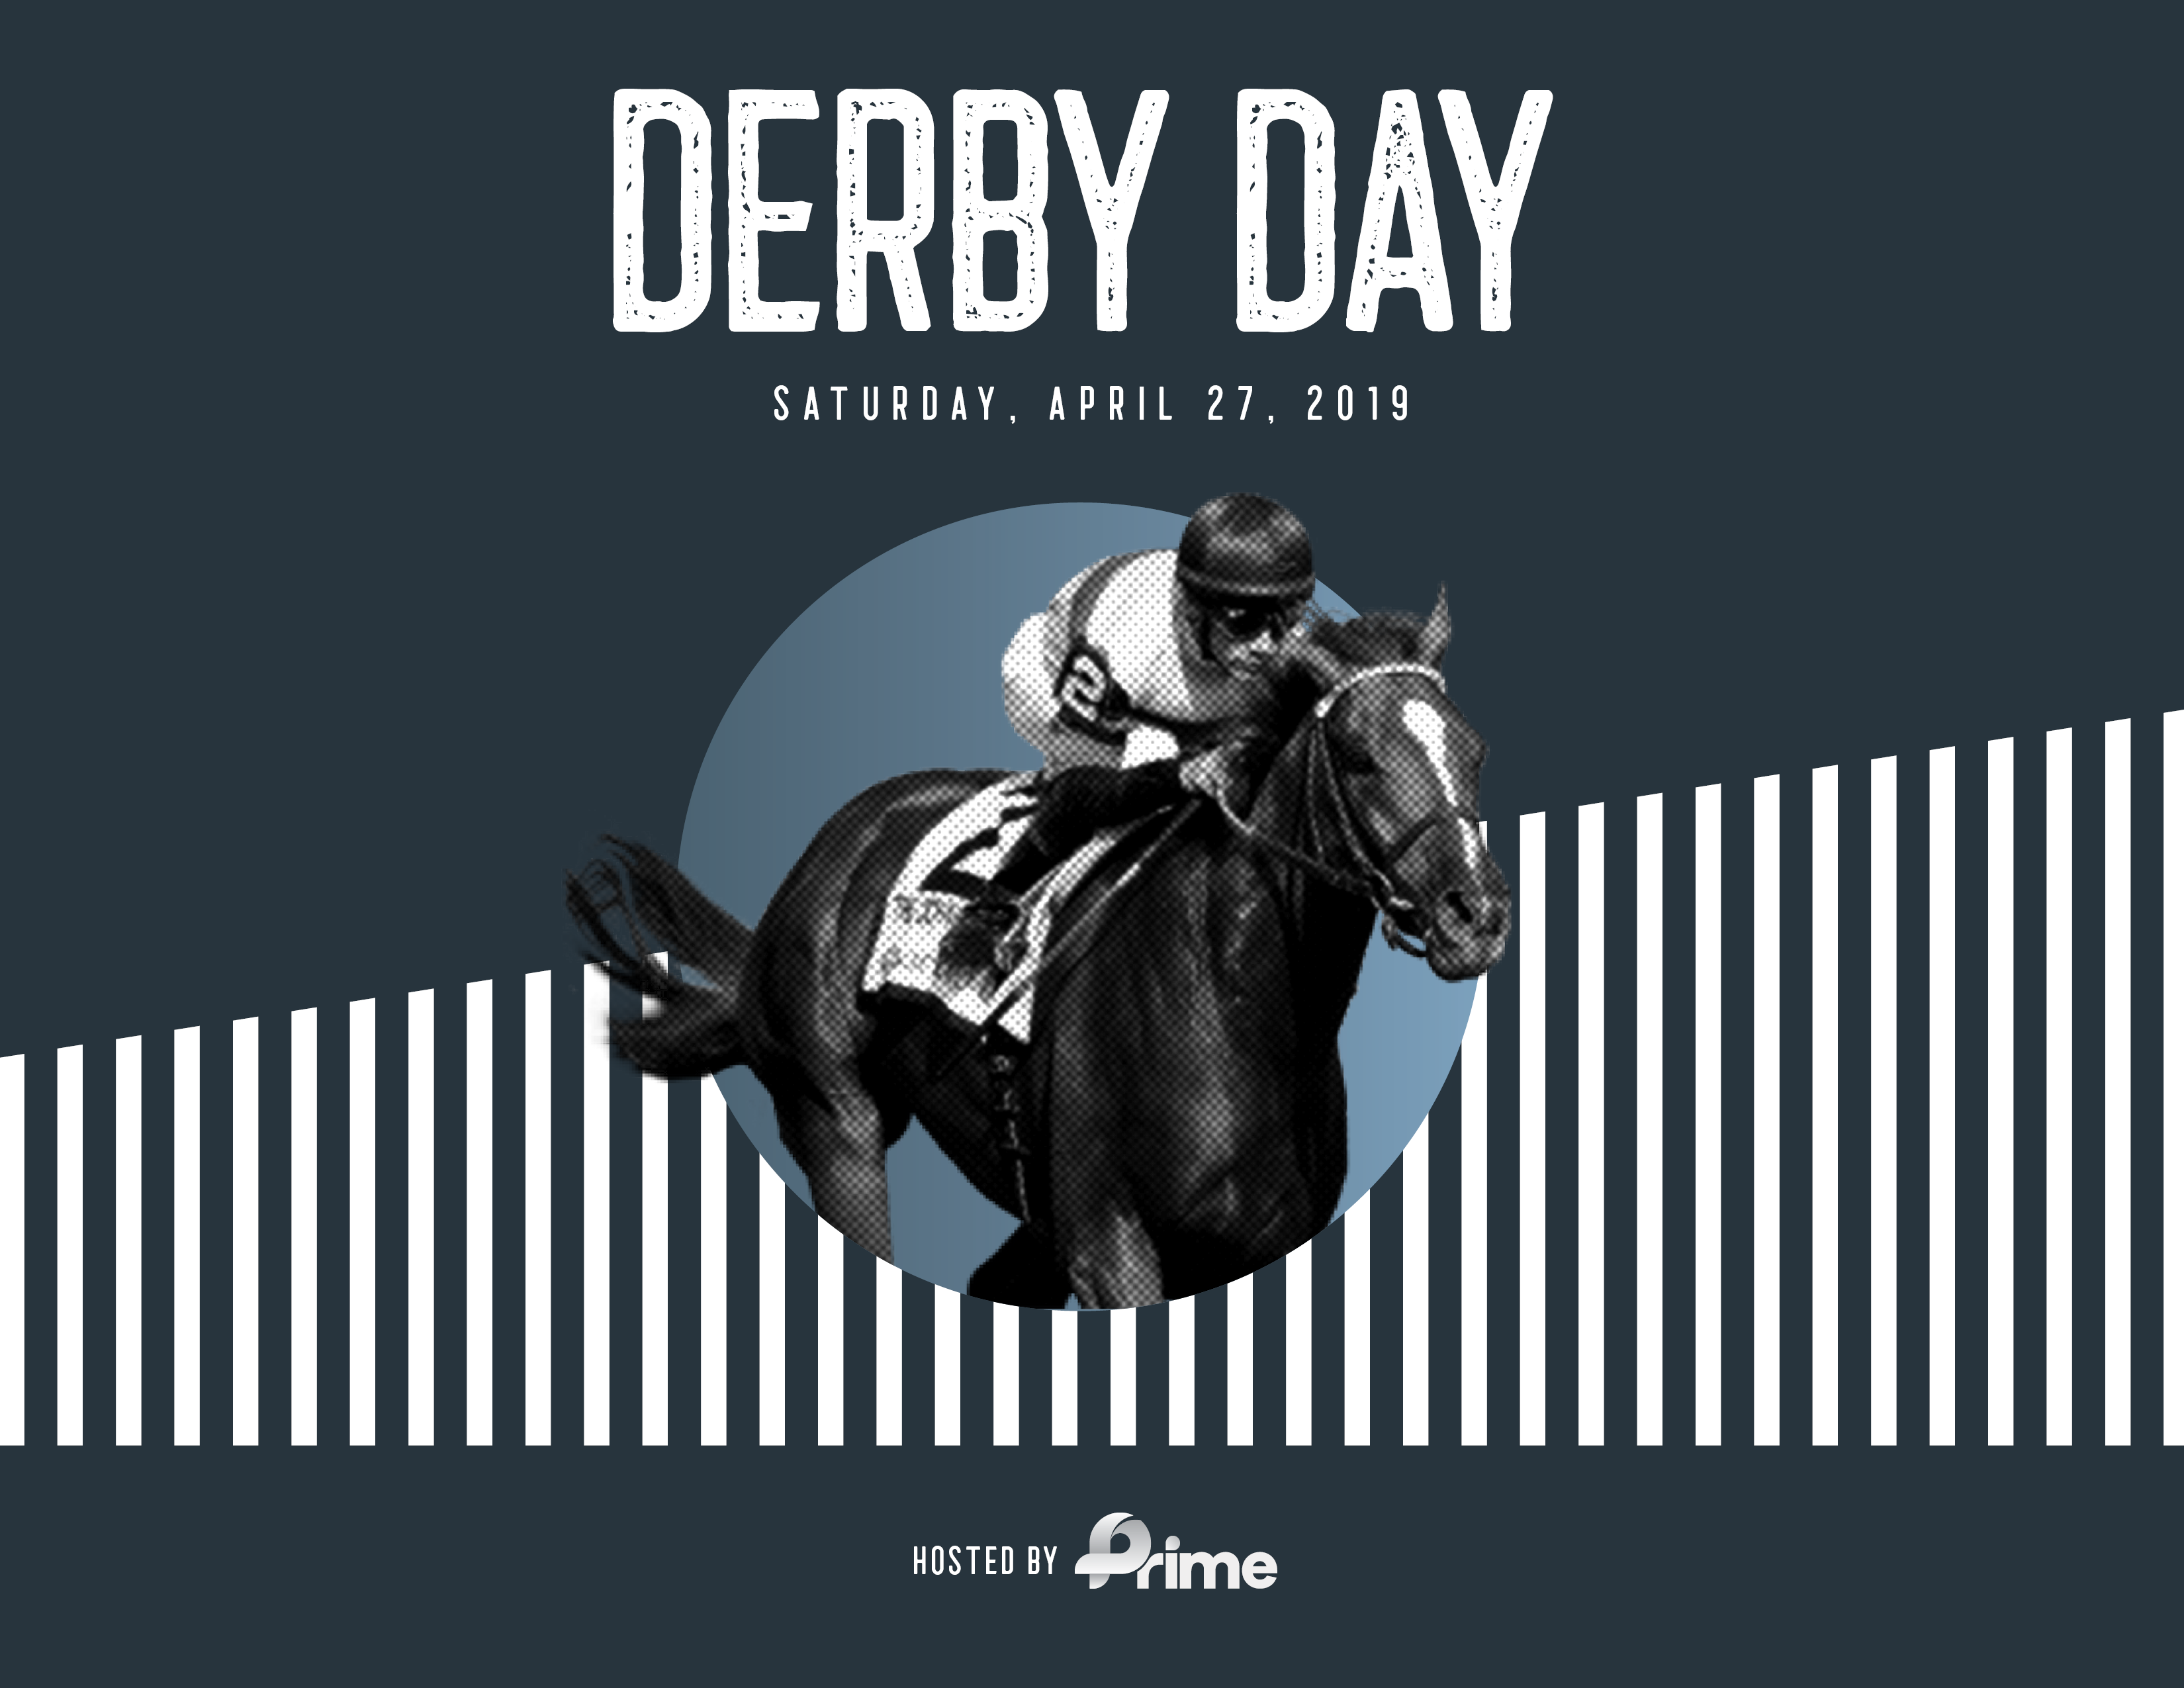 2019 Derby Day is right around the corner!